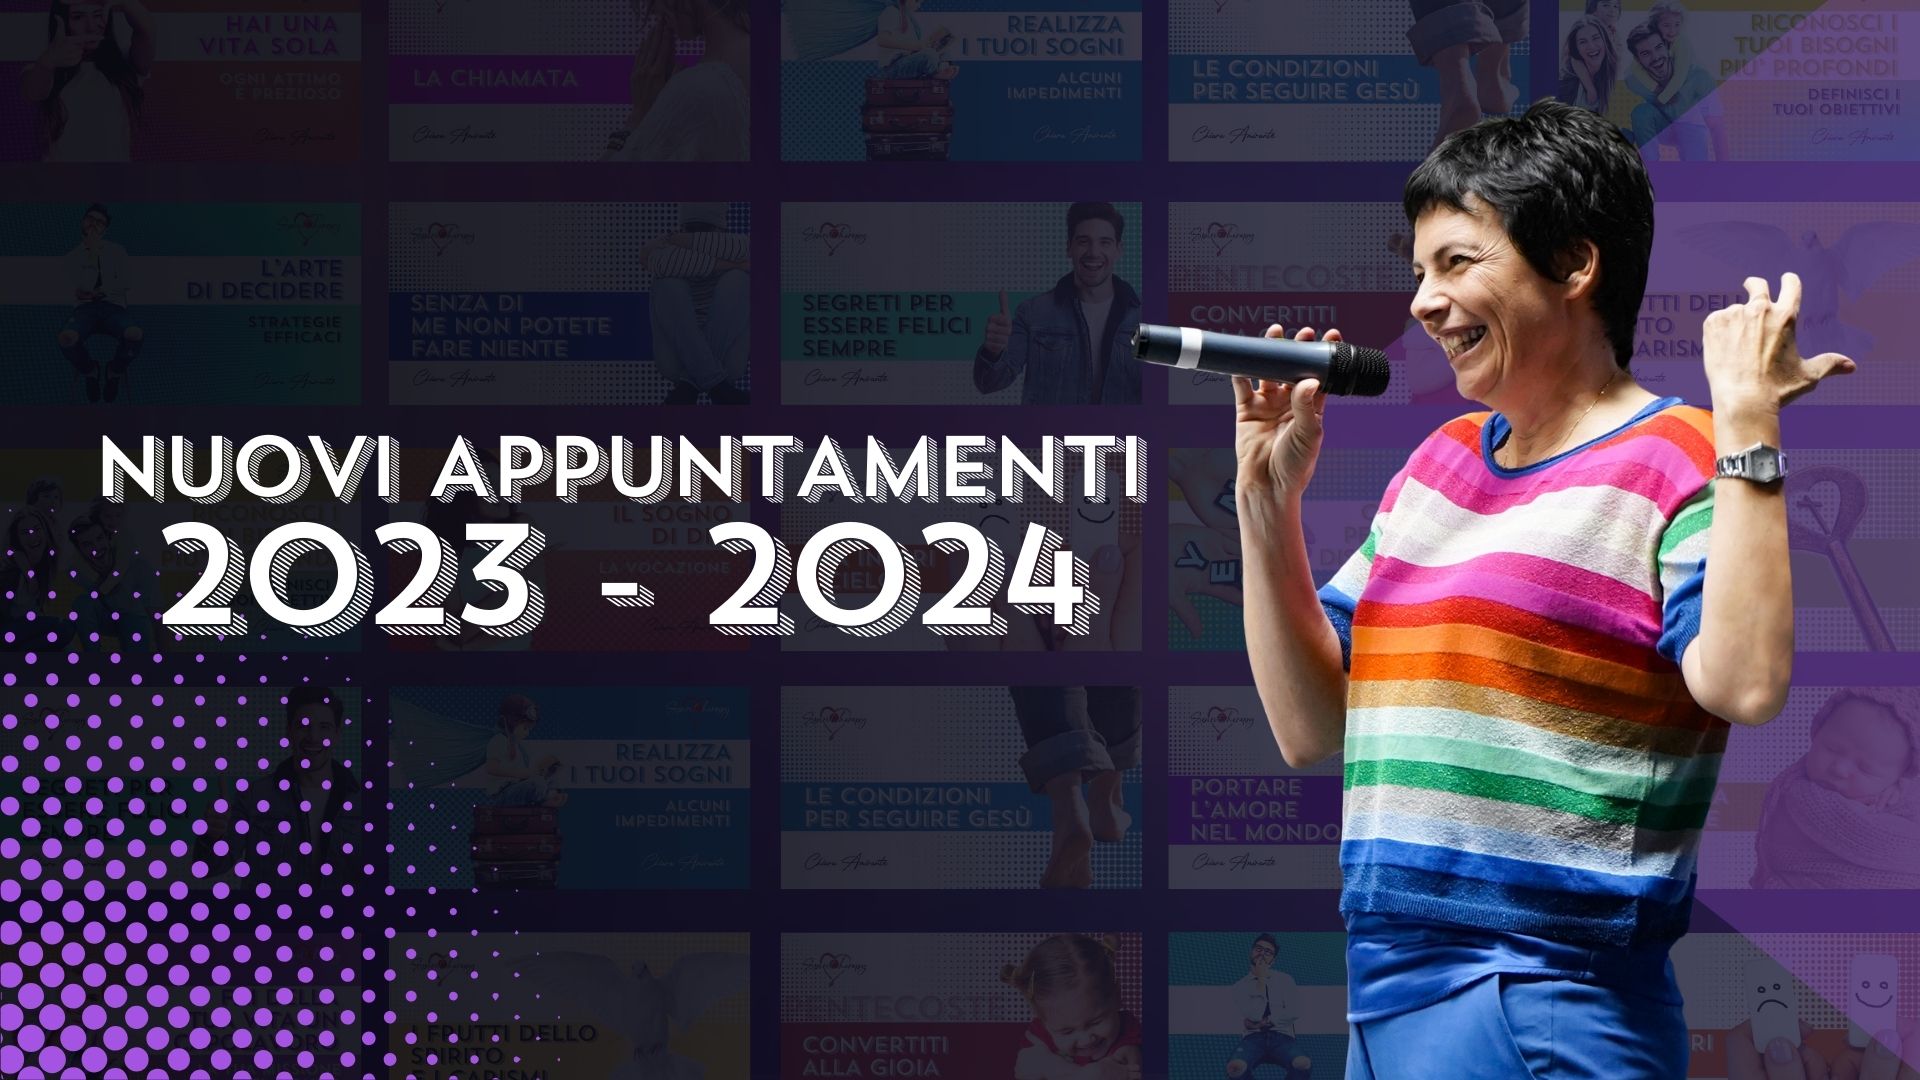 Appuntamenti 2023-2024 - Chiara Amirante